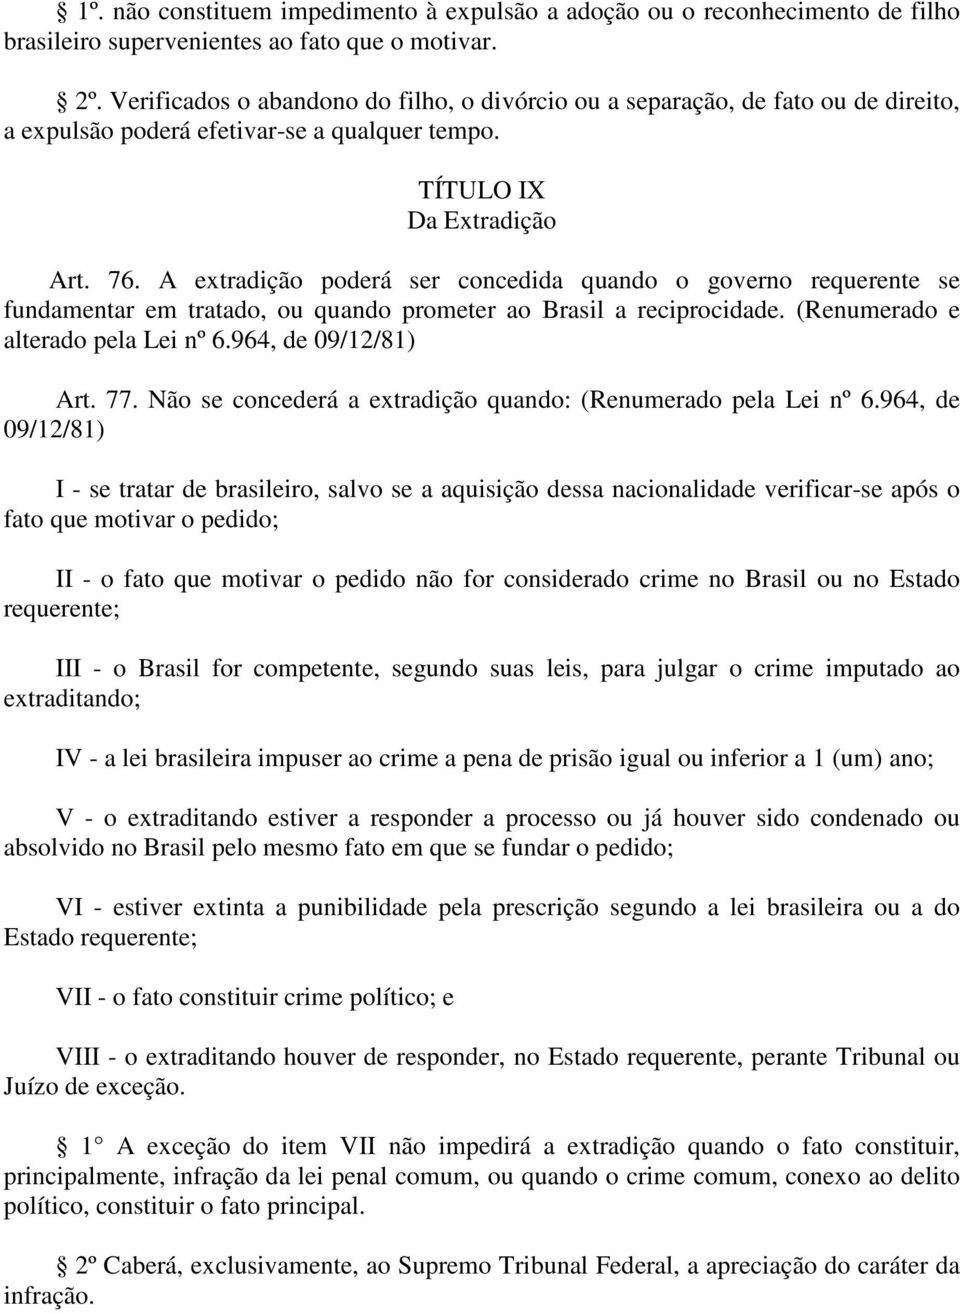 A extradição poderá ser concedida quando o governo requerente se fundamentar em tratado, ou quando prometer ao Brasil a reciprocidade. (Renumerado e alterado pela Lei nº 6.964, de 09/12/81) Art. 77.